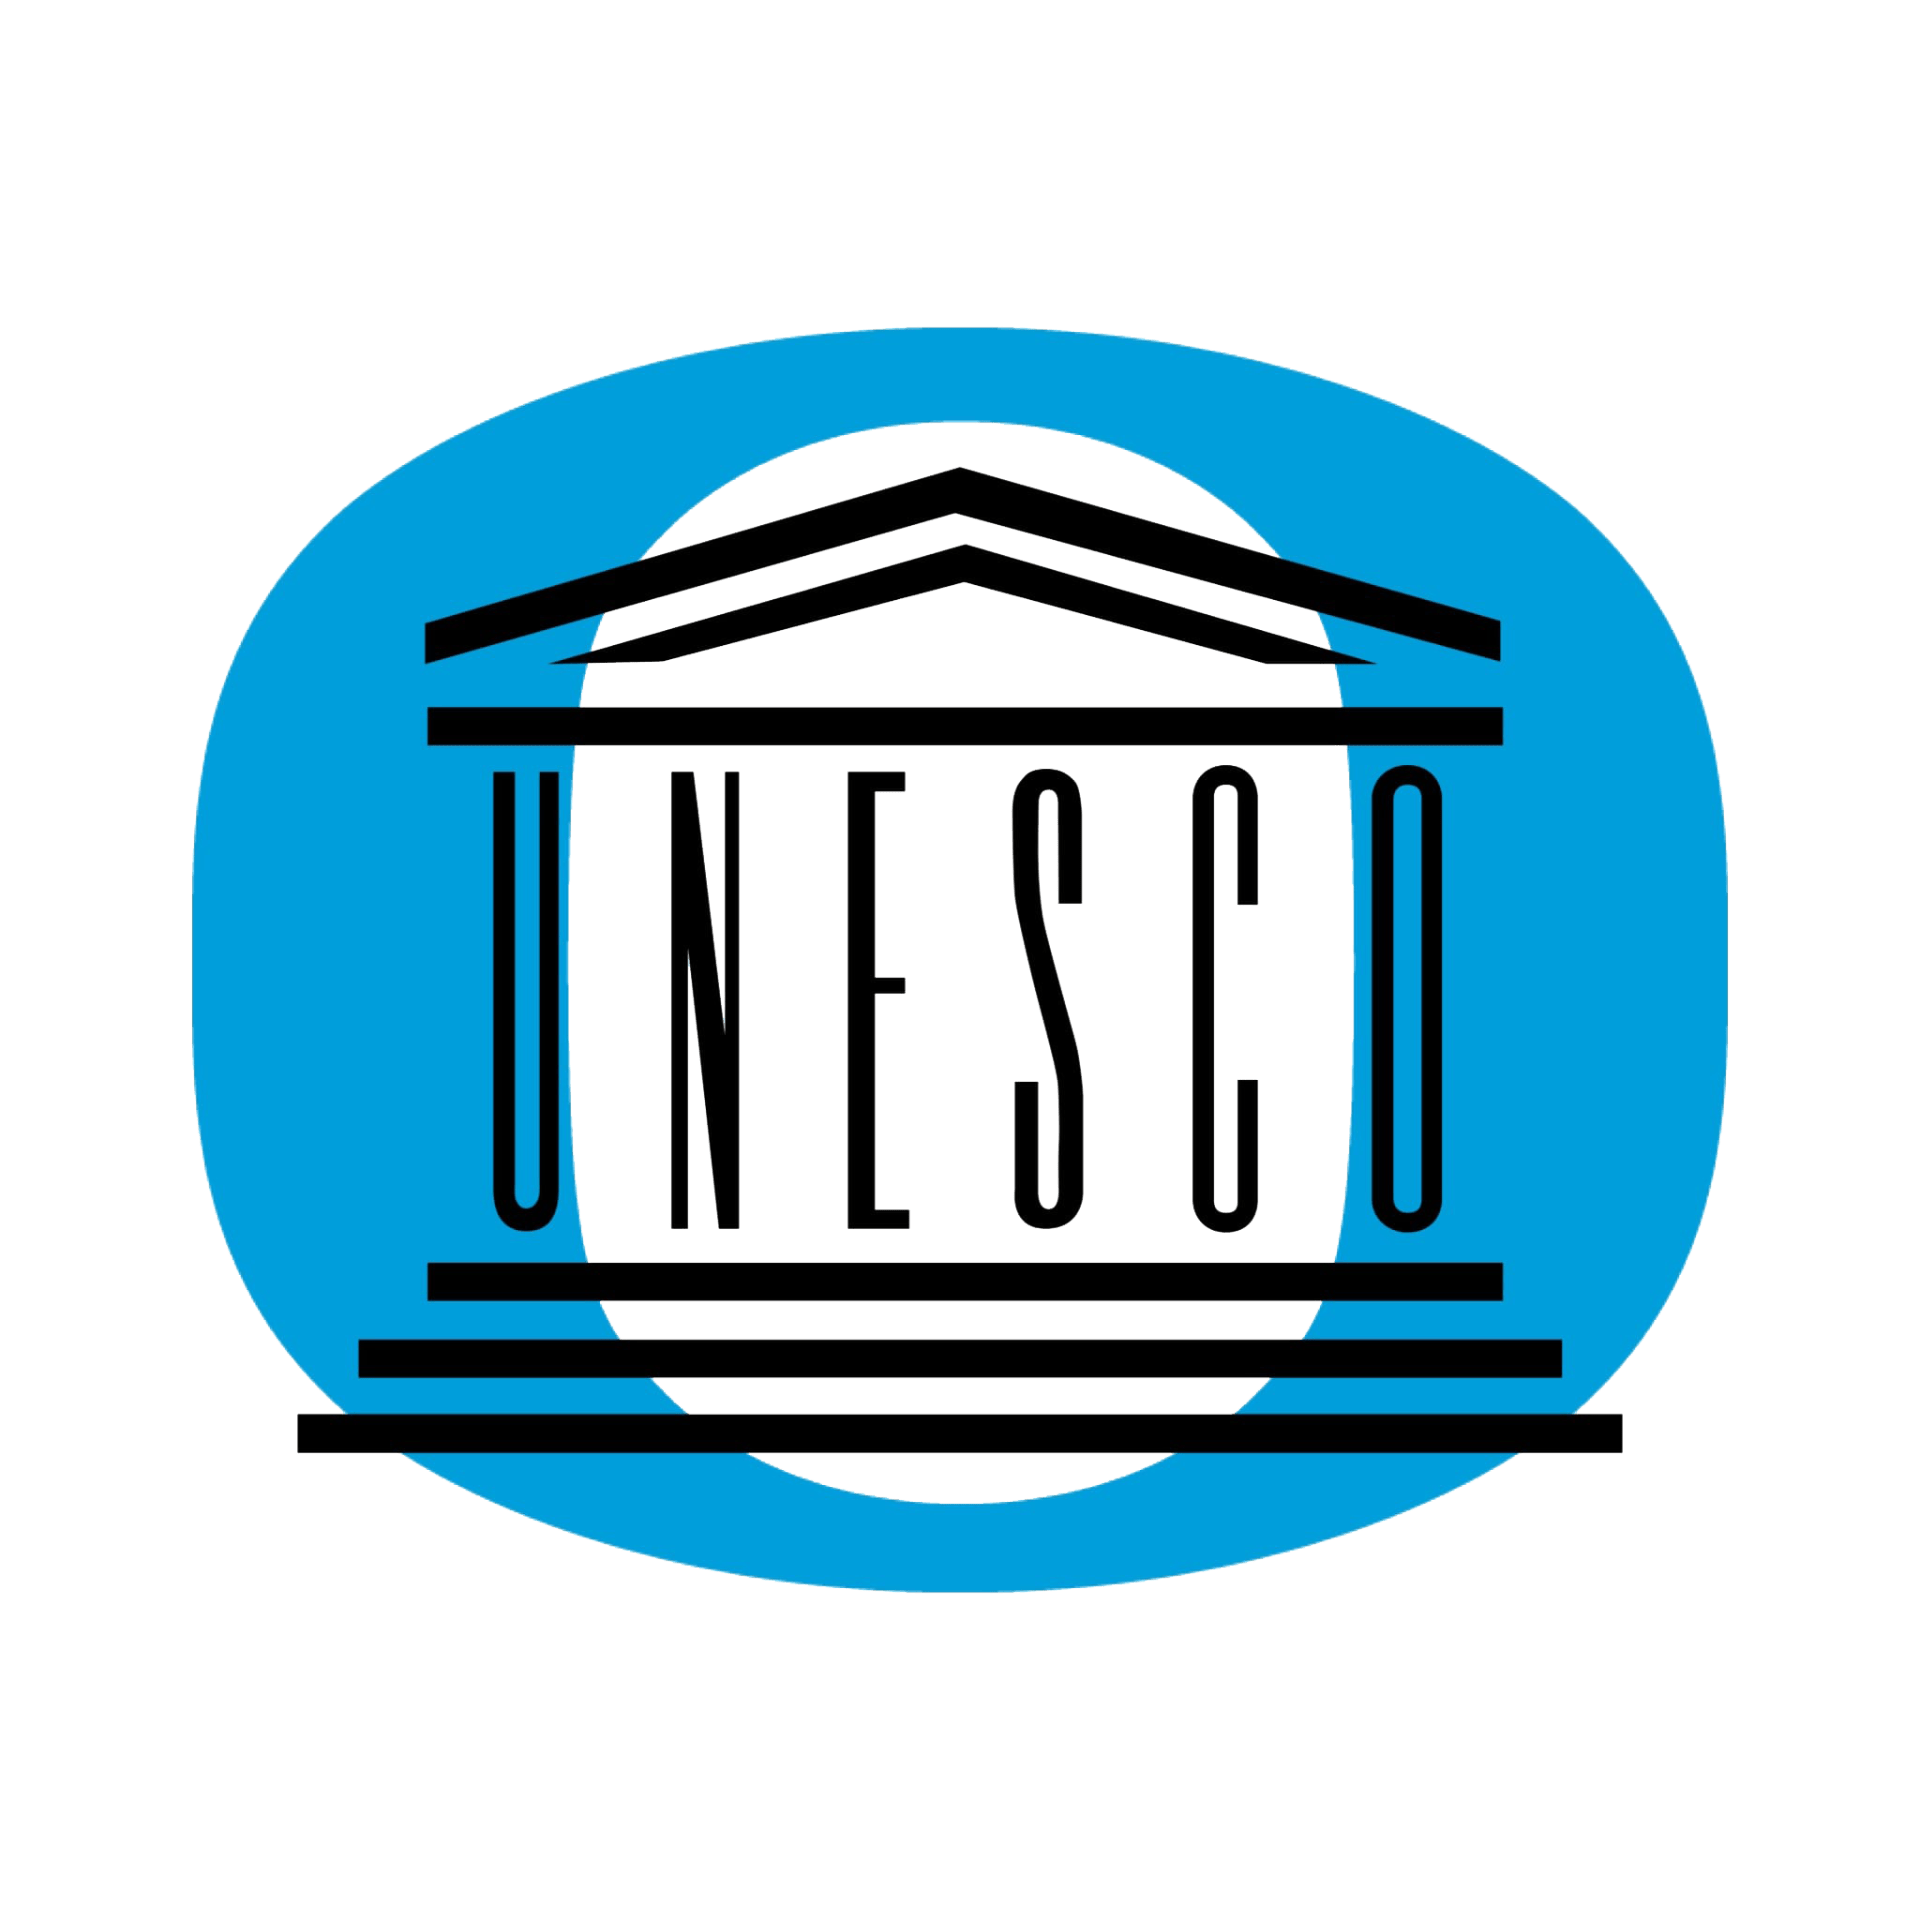 University of Oregon - UNESCO Crossings Institute